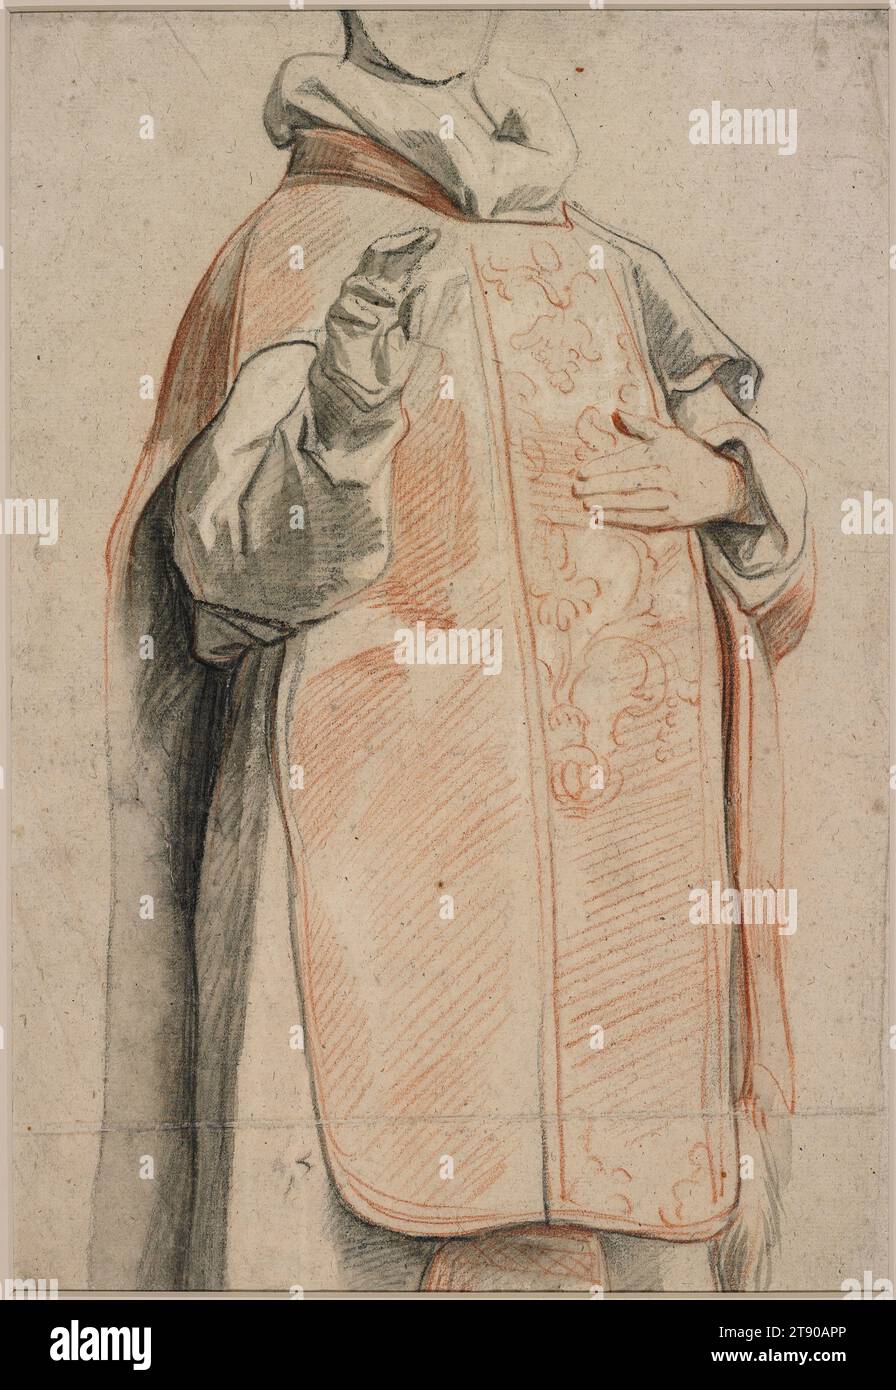 Etude d'une figure dans les robes du prêtre, c. 1650, Jacob Jordaens, Flamand, 1593 - 1678, 14 15/16 x 10 1/16 po (37,94 x 25,56 cm) (env.)20 1/2 x 24 15/16 po (52,07 x 63,34 cm) (mat), craie noire et rouge, charbon huilé, gris lavé, rehaussé de blanc, Belgique, 17e siècle, Jacob Jordaens était le peintre le plus important à Anvers dans la génération après Rubens. Il a été grandement influencé par l'artiste aîné et a travaillé occasionnellement pour lui. Bien qu'il soit maintenant mieux connu pour ses images de genre droll, il a également peint des œuvres religieuses, historiques, mythologiques et allégoriques. Banque D'Images